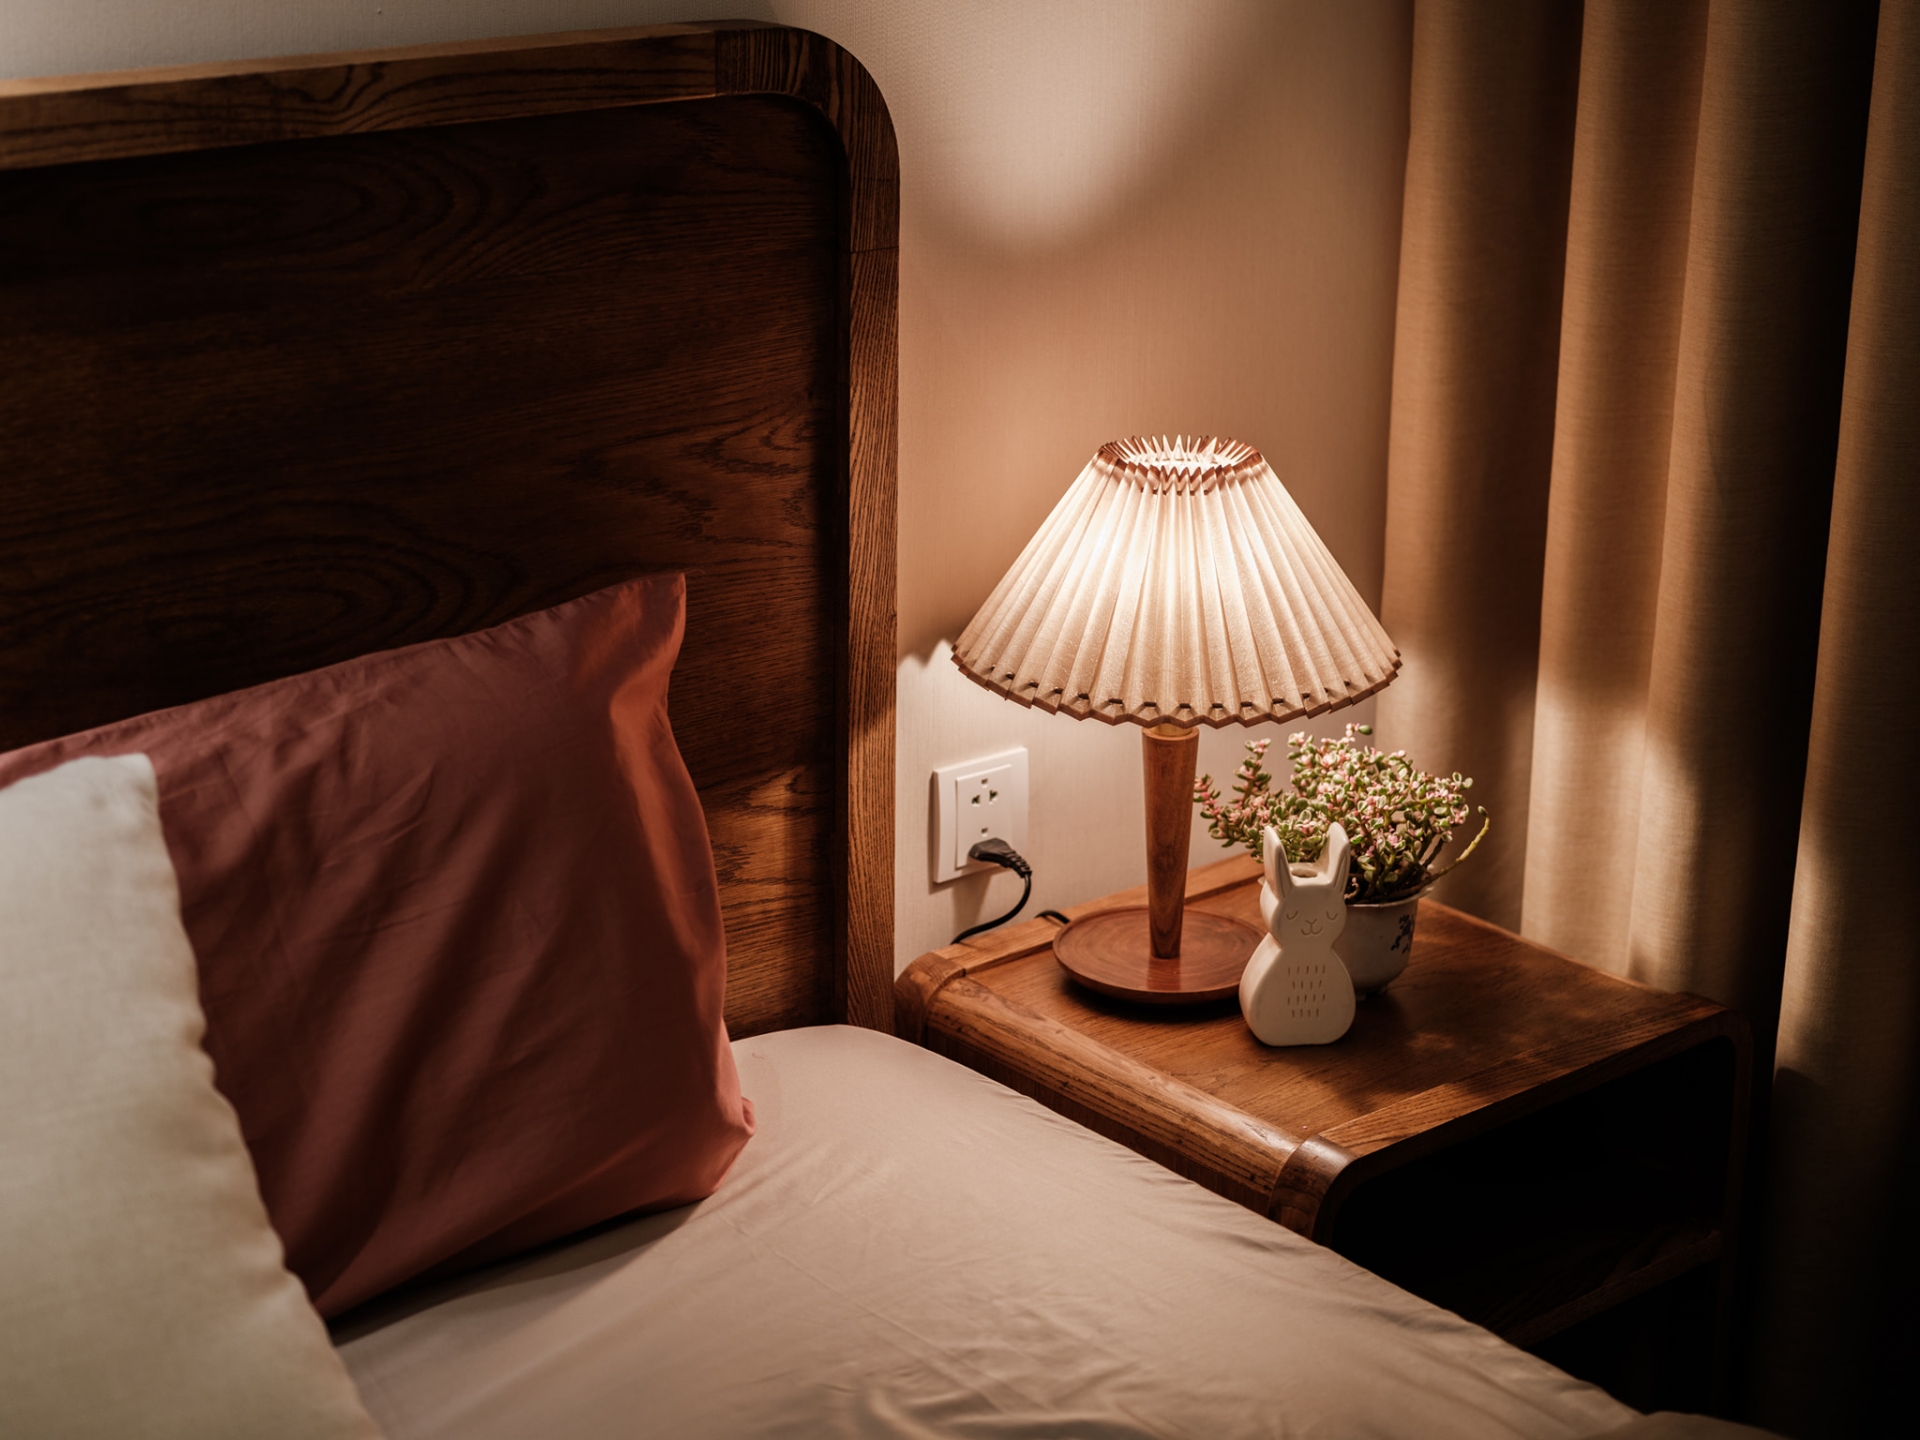 Táp đầu giường bằng gỗ nhỏ gọn với chiếc đèn ngủ phong cách cổ điển, lọ hoa trang trí và đặc biệt là một chú thỏ trắng dễ thương.